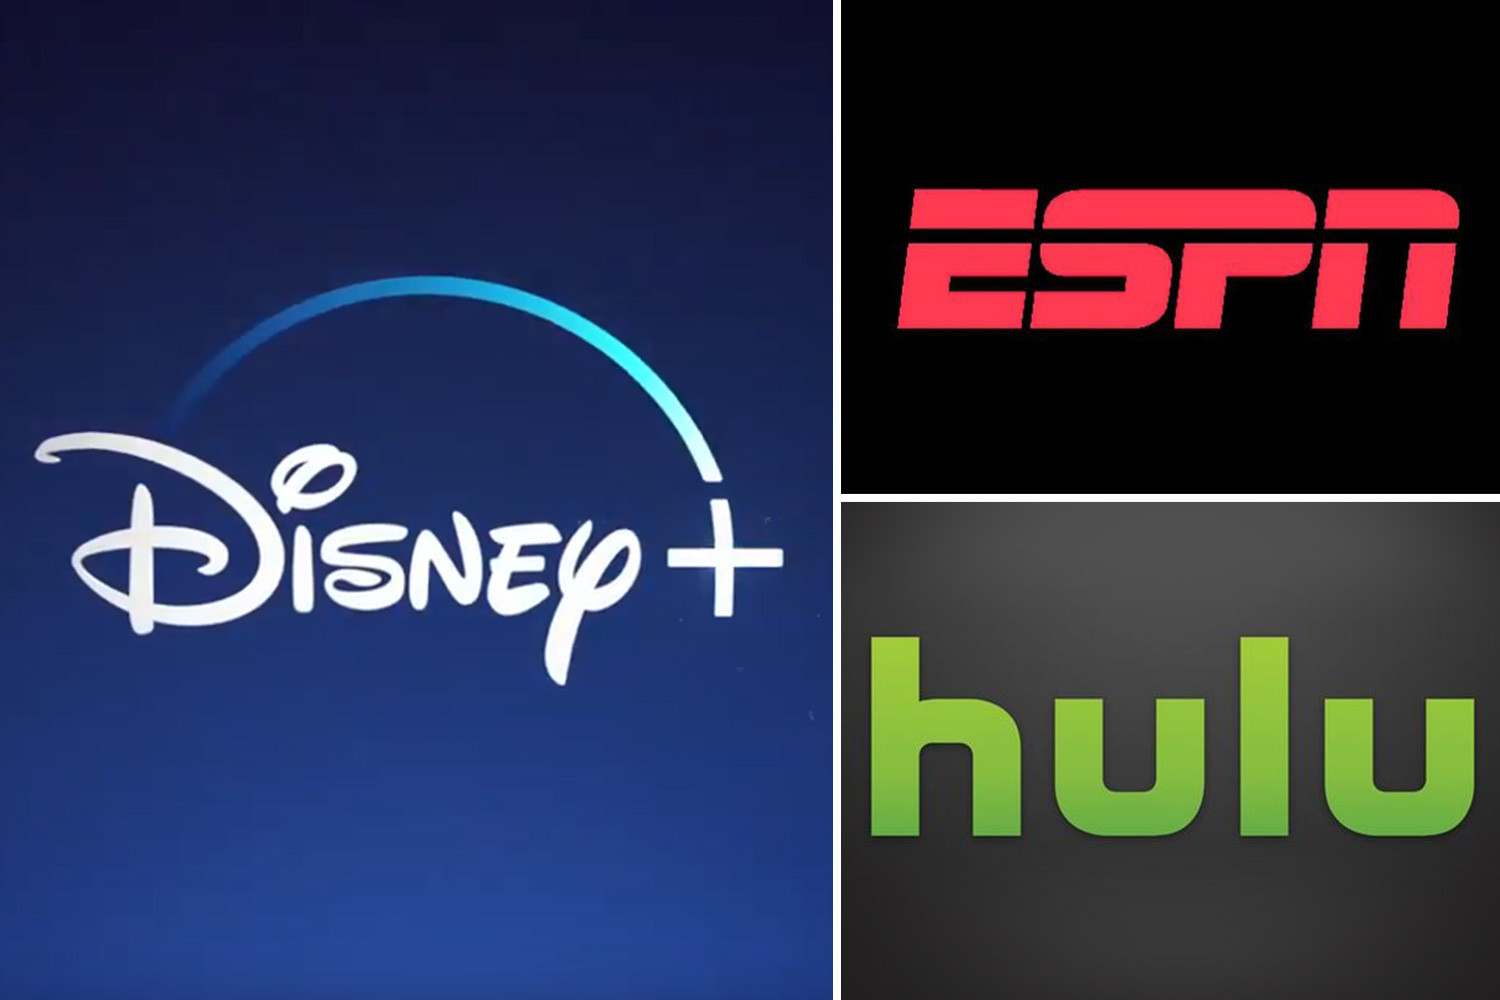  Disney menawarkan paket bundel yang mencakup ESPN dan Hulu